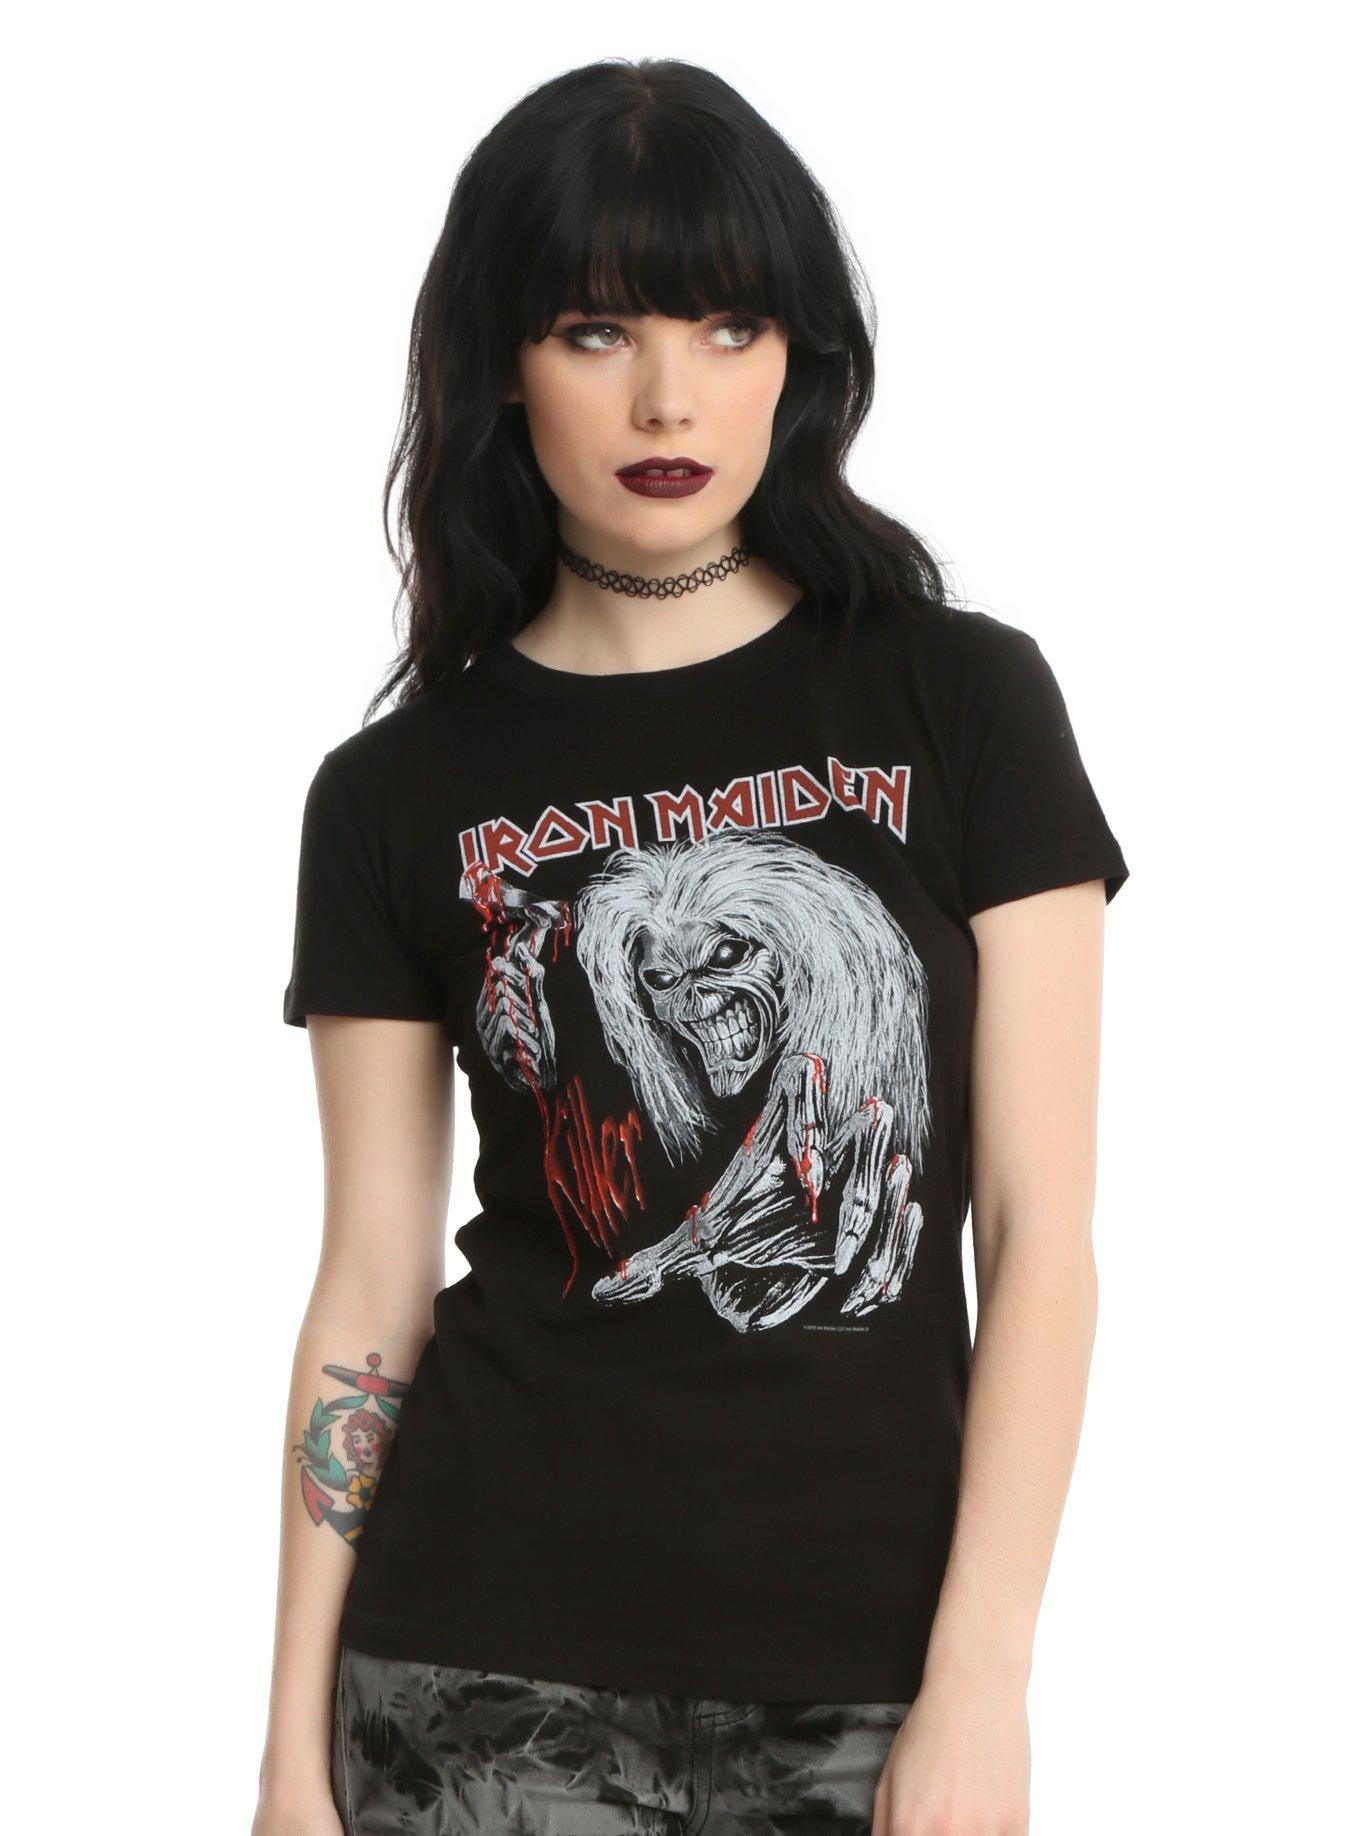 Iron Maiden Ed Kills Again Hot T-Shirt | Girls Topic